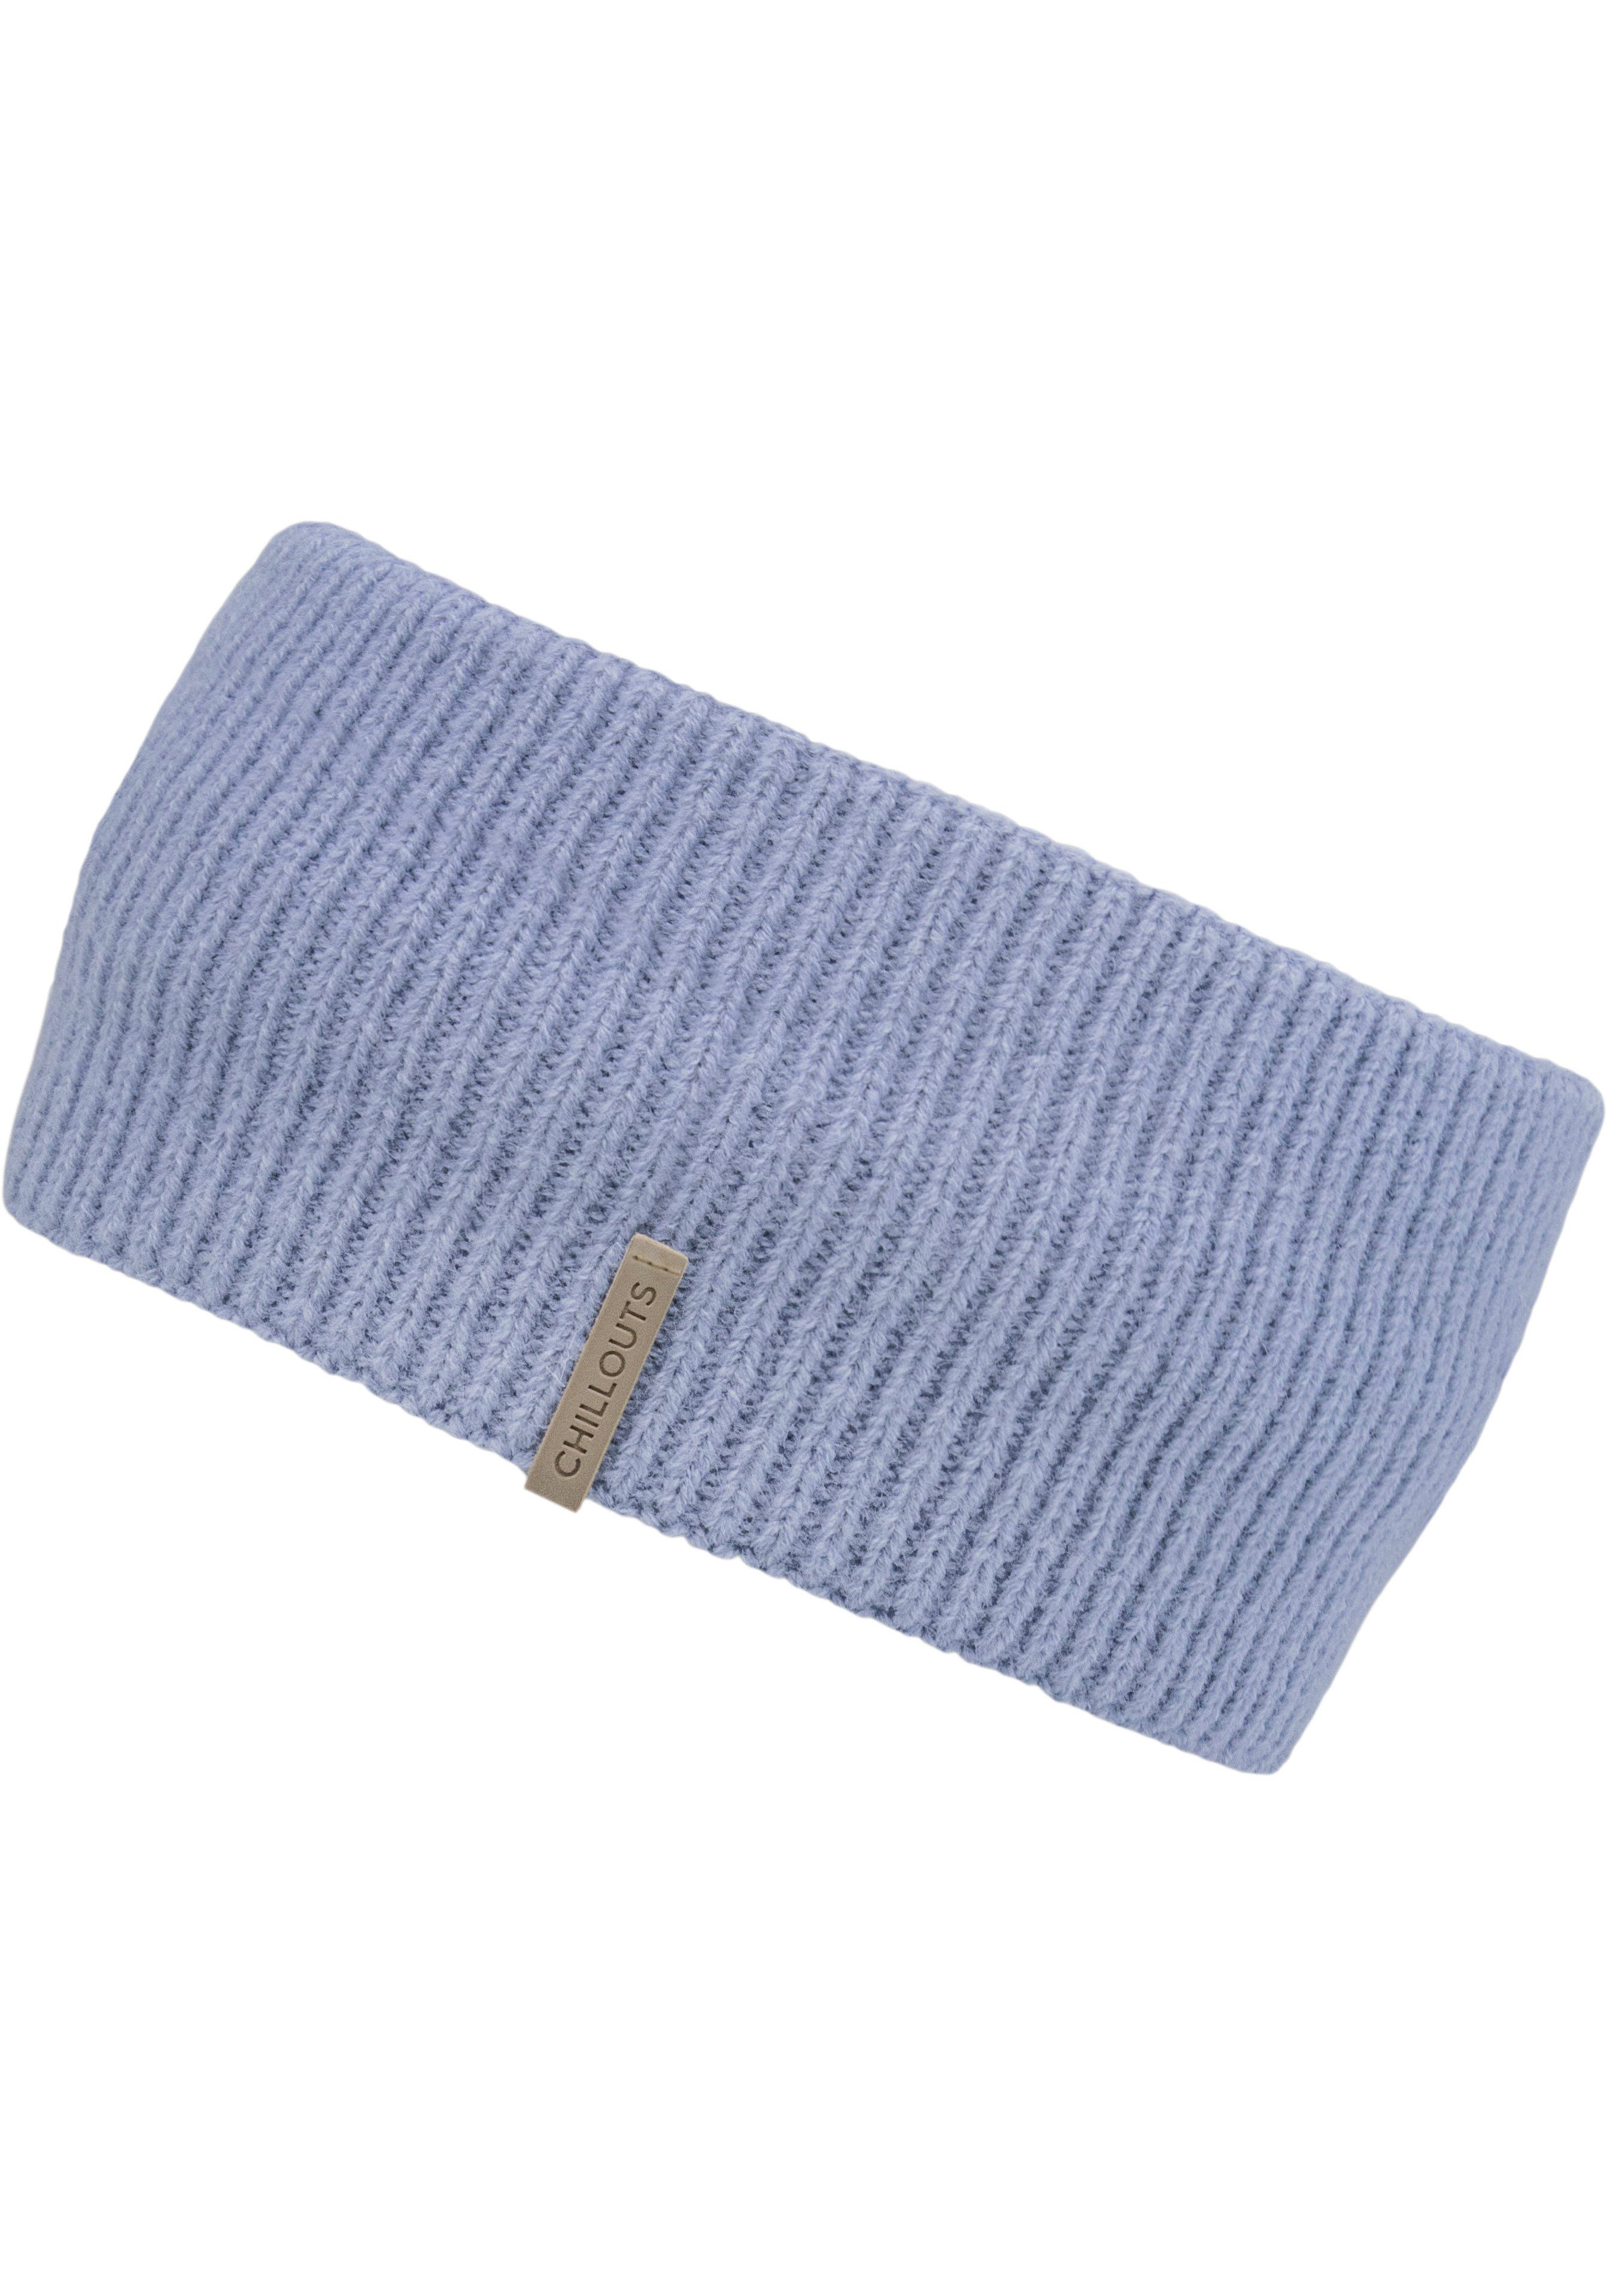 chillouts Stirnband Ida Headband Trendiges Accessoire blue | Strickmützen